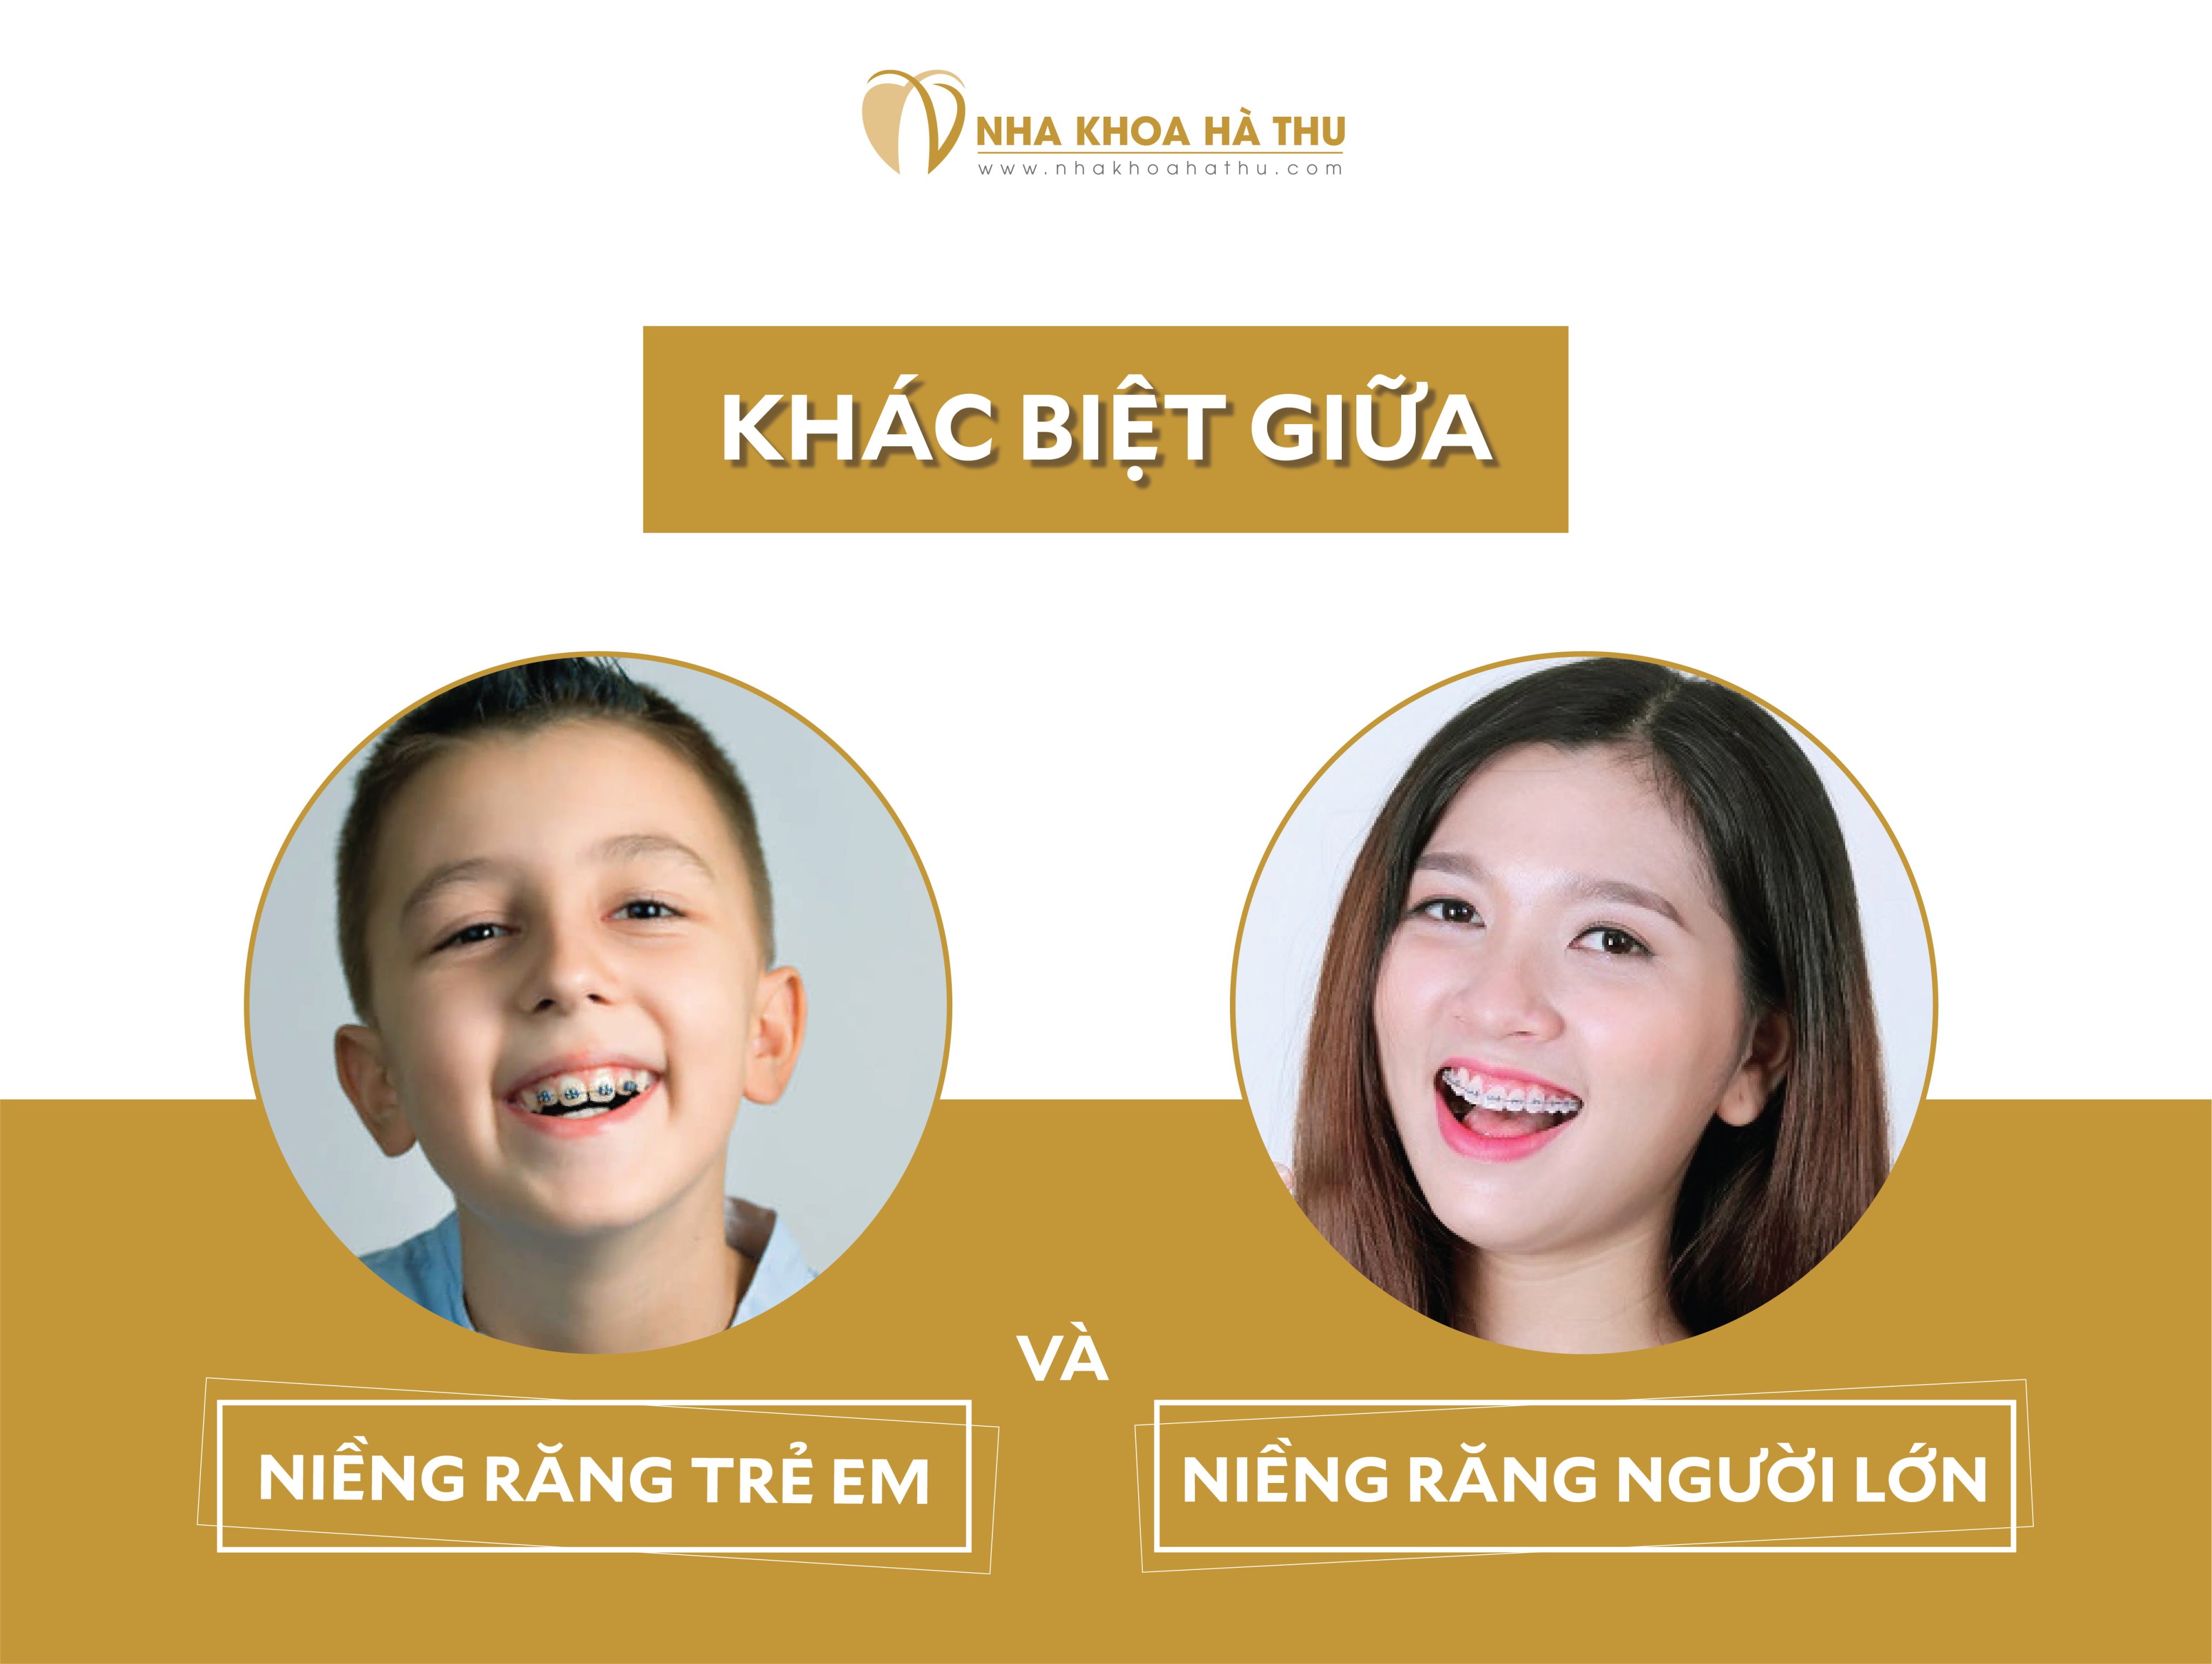 Sự khác biệt giữa niềng răng Trẻ em và Người lớn